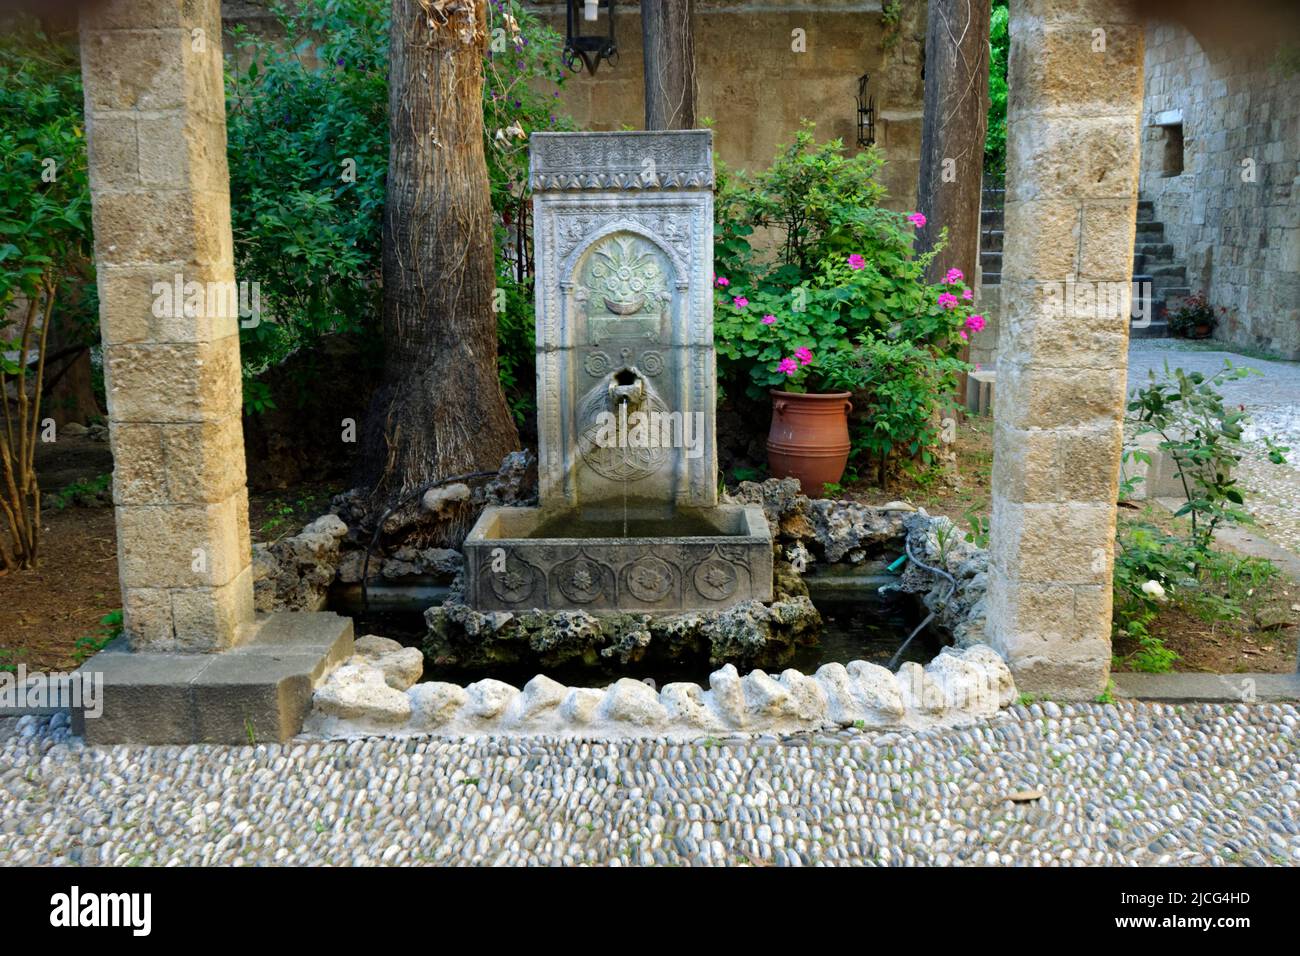 Fontaine ornementale, Musée archéologique de Rhodes formellement l'Hôpital des Chevaliers de Saint-Jean, Rhodes vieille ville, Rhodes, Grèce. Banque D'Images